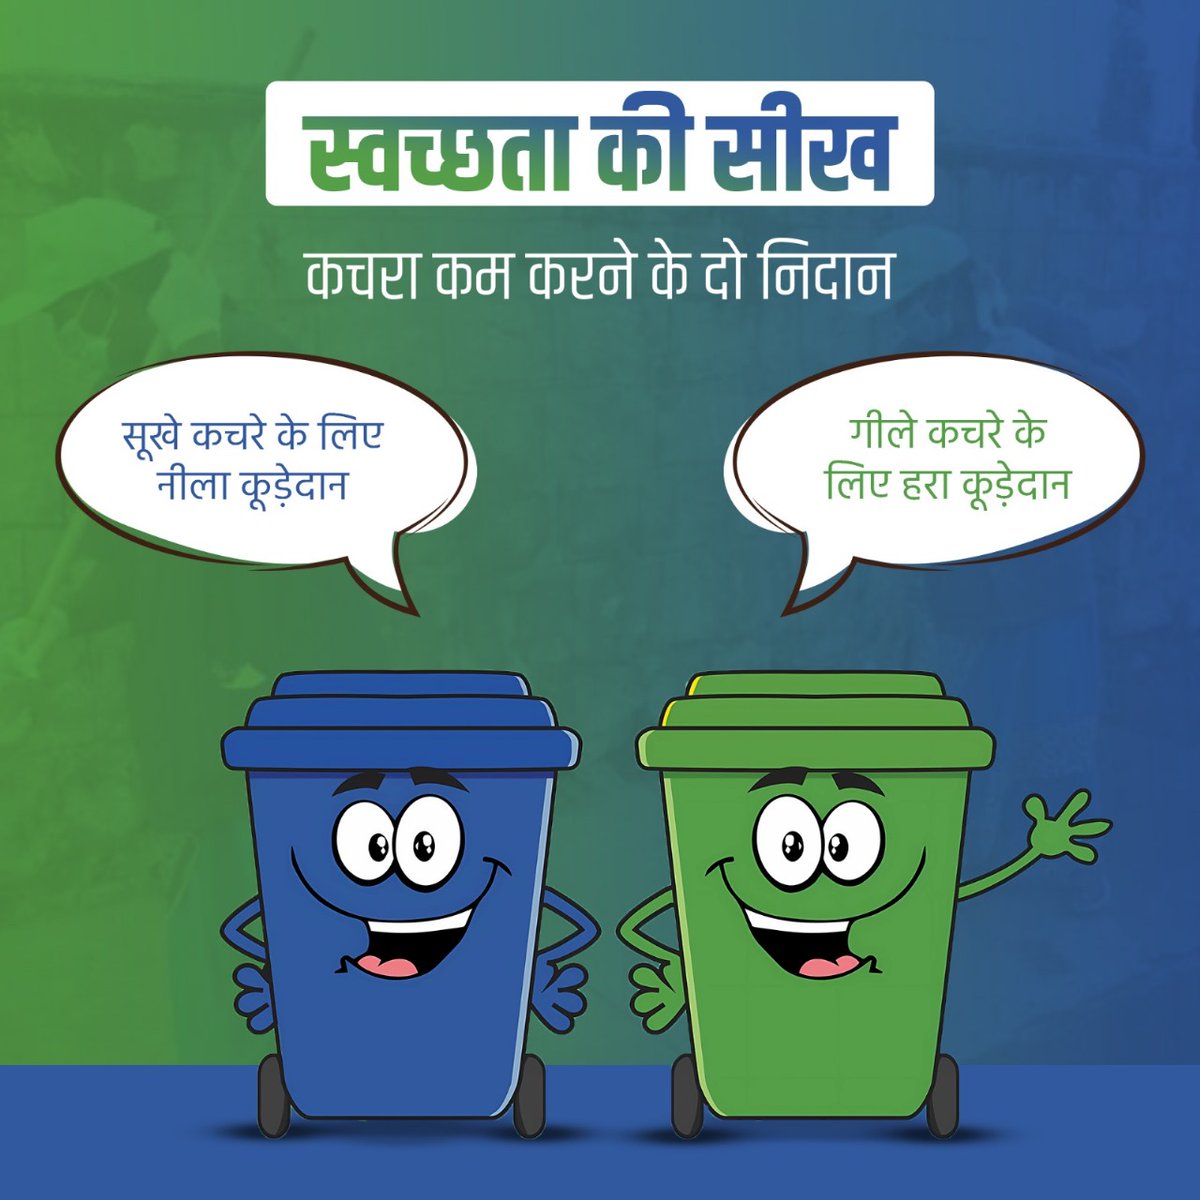 घर पर ही कचरे को अलग करने को अपनी आदत में लाएं। गीले कचरे के लिए हरे एवं सूखे कचरे के लिए नीले कूड़ेदान का प्रयोग कर 'स्वच्छ भारत' में अपना योगदान दें। #SwachhataKiSeekh #SwachhBharat #GarbageFreeCities #IndiaVsGarbage #WasteSegregation